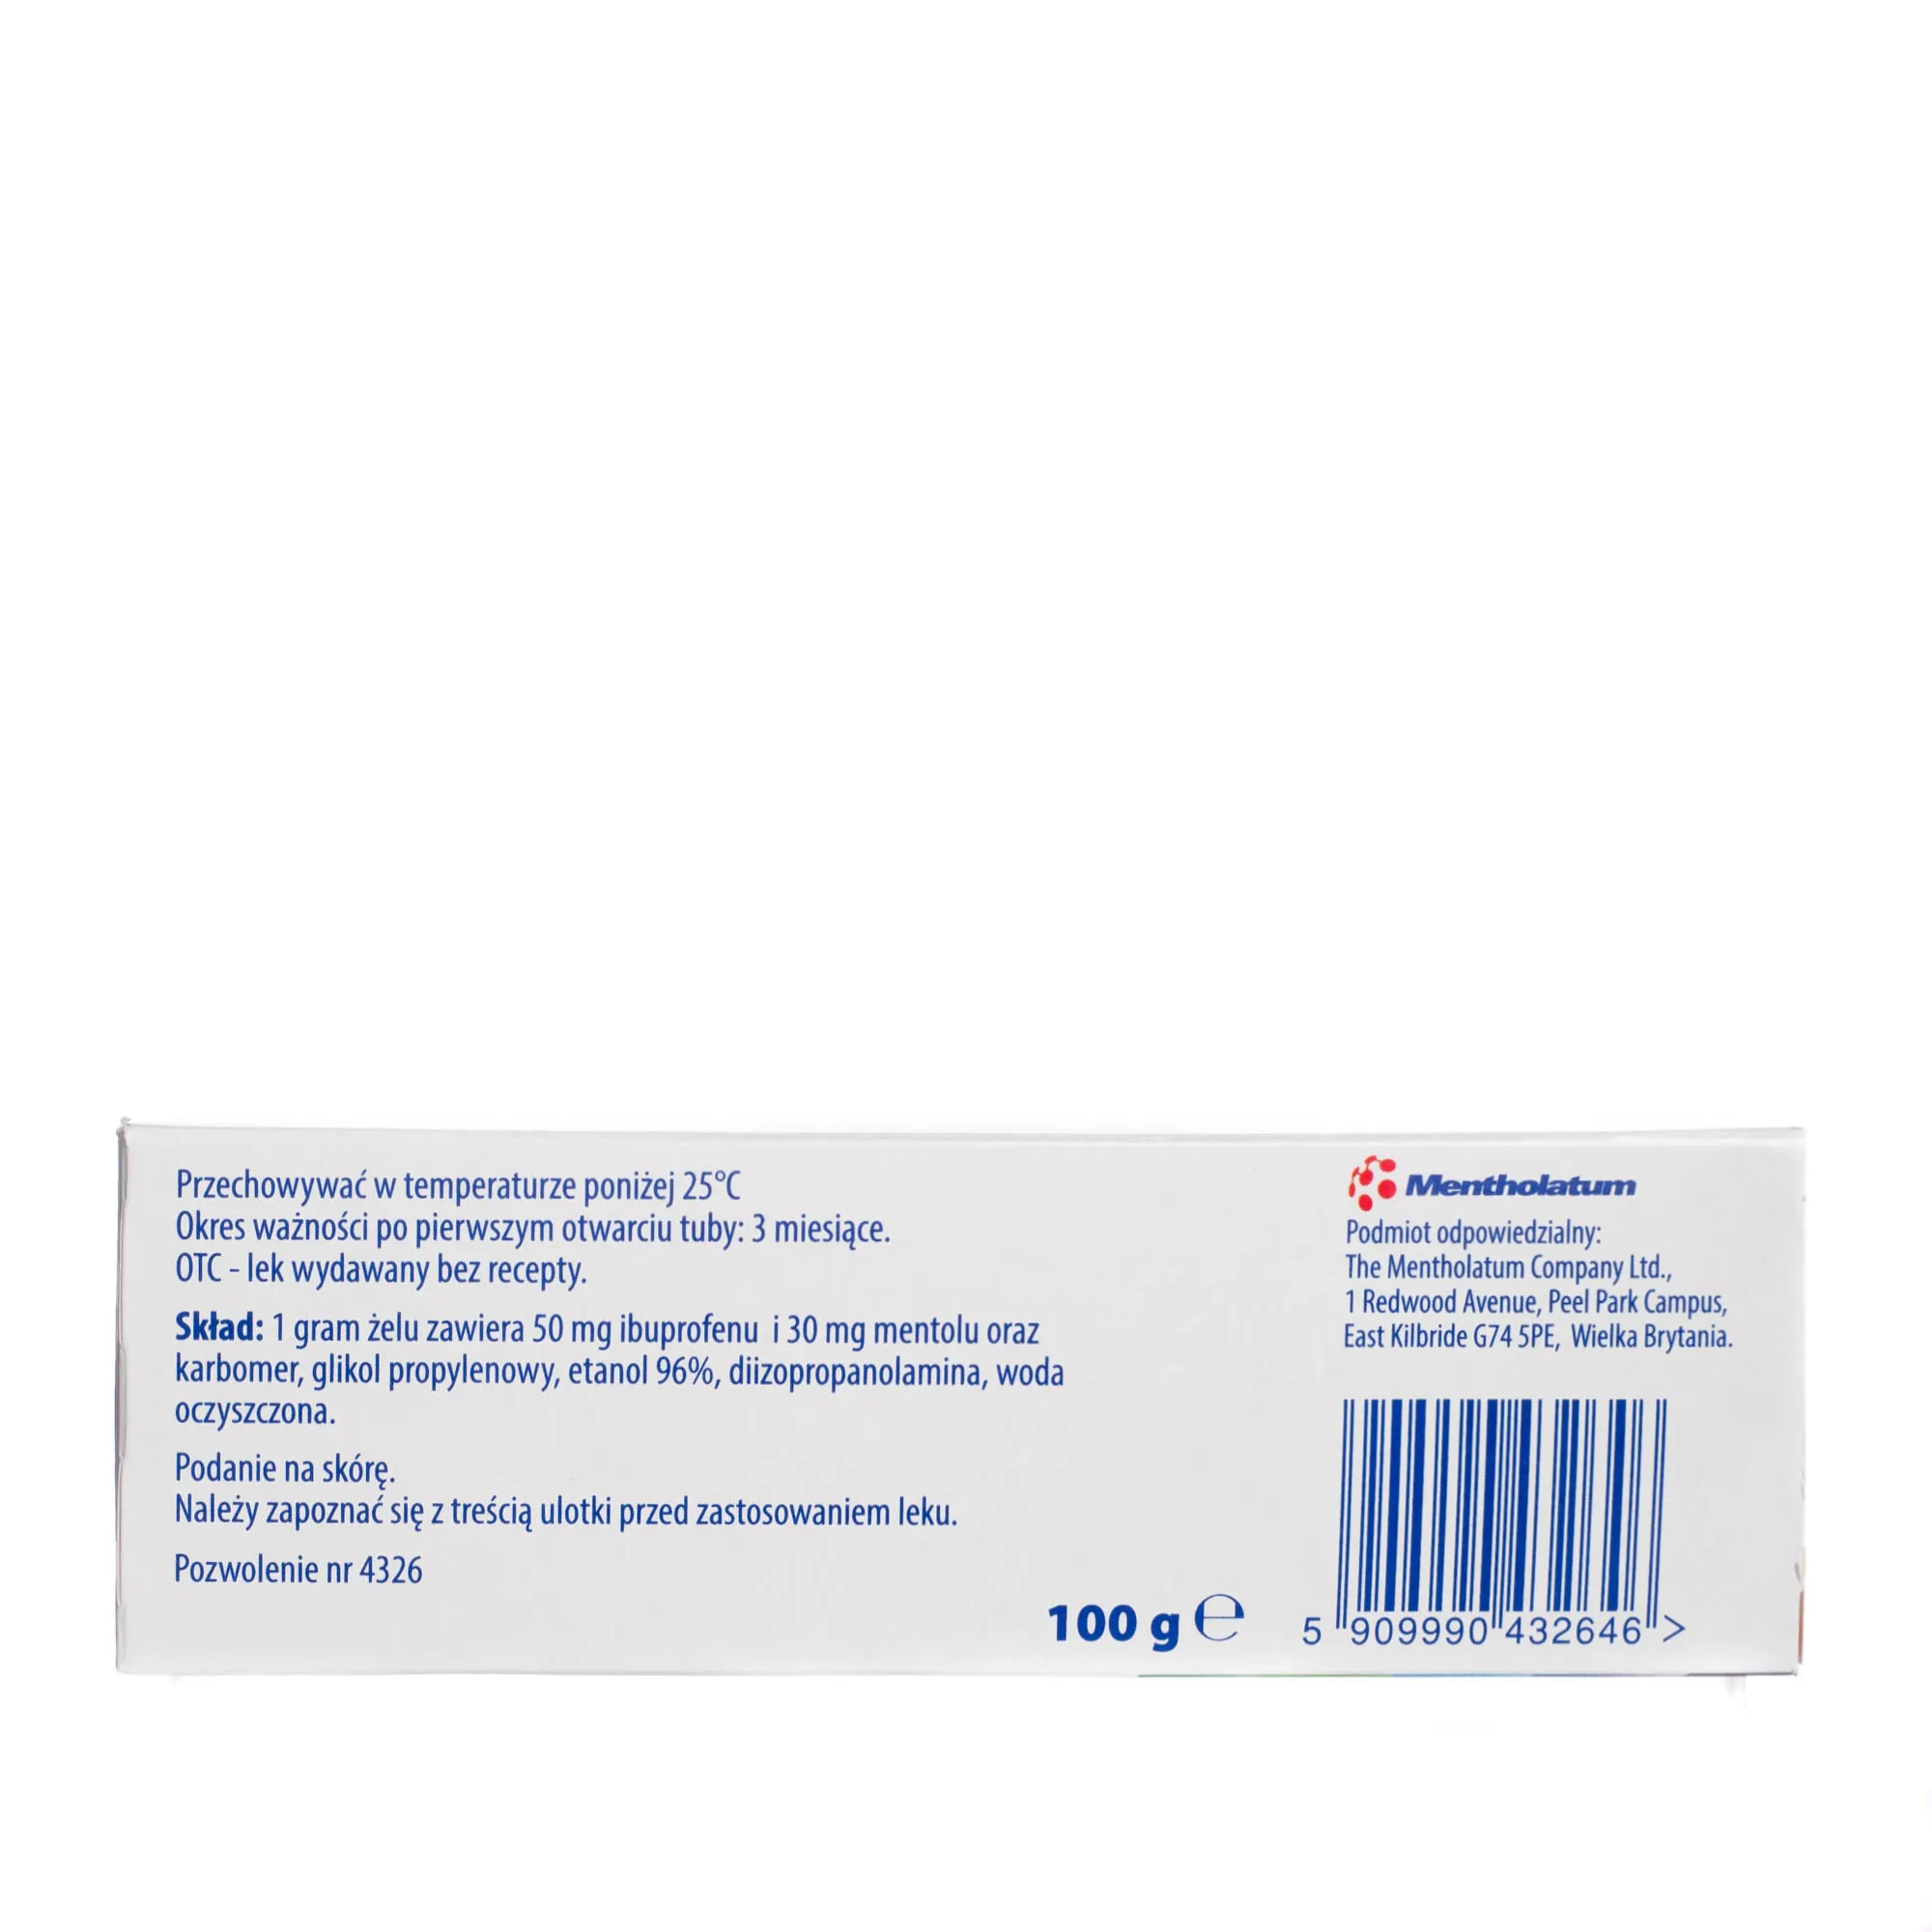 DIP RILIF żel Ibuprofenum + Mentholum ( 50 mg + 30 mg ) / g, 100g 